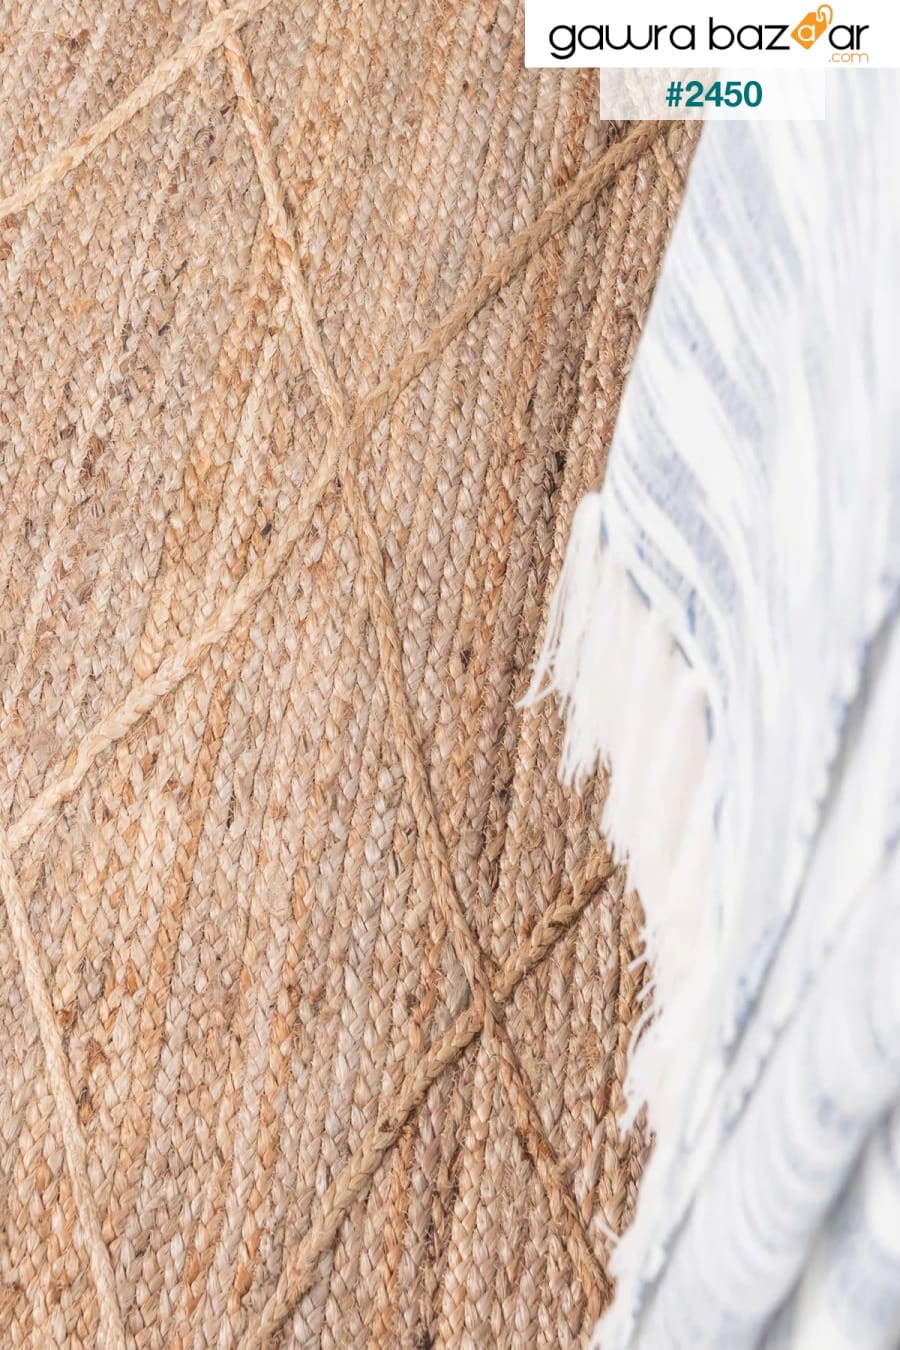 Natura Jute Carpet القش السجاد الطبيعي المنسوجة يدويا السجاد البساط عداء غرفة المعيشة المطبخ غرفة نوم 00019A Koza Halı 2